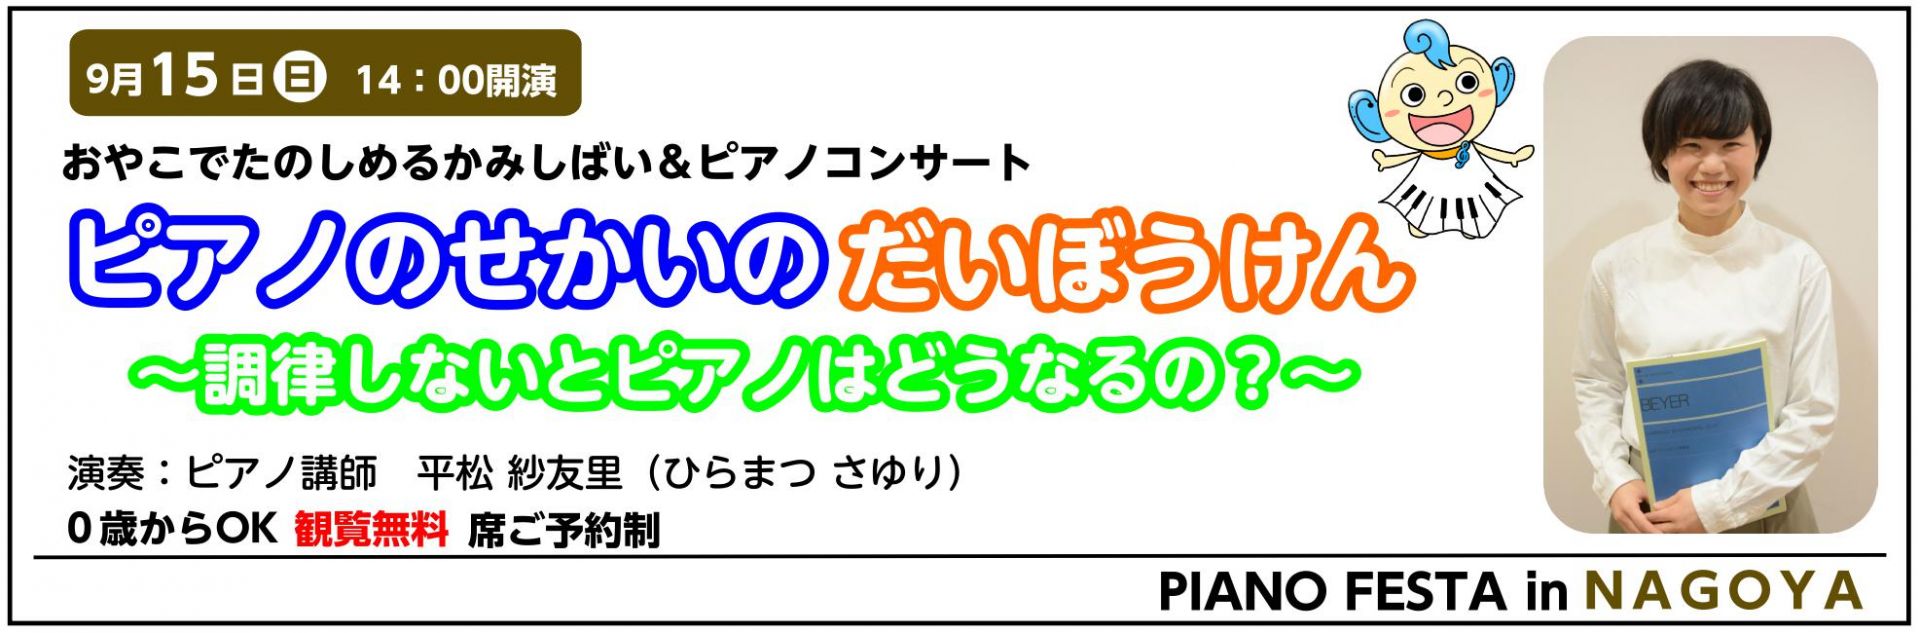 【終了致しました】9/15（日） 紙芝居&ピアノコンサート ピアノのせかいのだいぼうけん 【PIANO FESTA 2019 in NAGOYA】